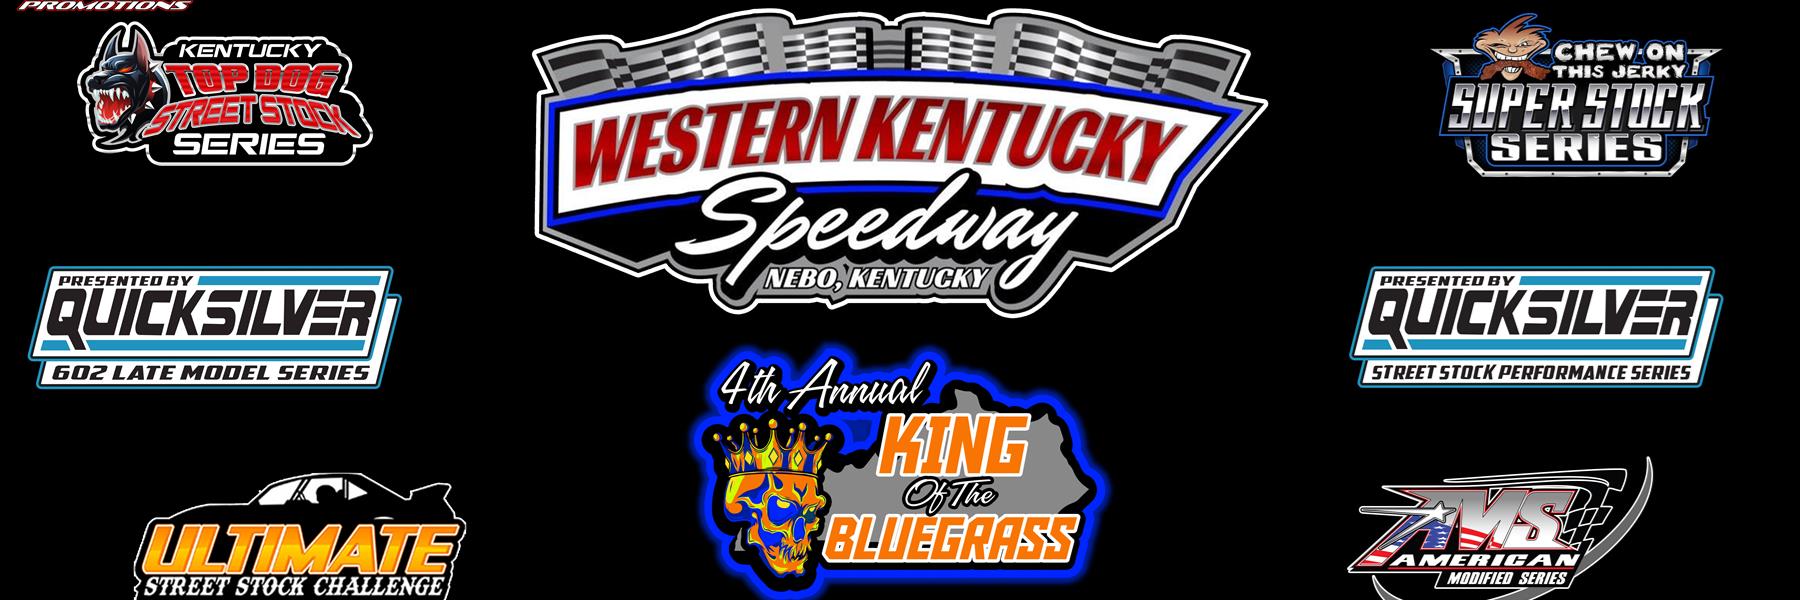 9/9/2022 - Western Kentucky Speedway